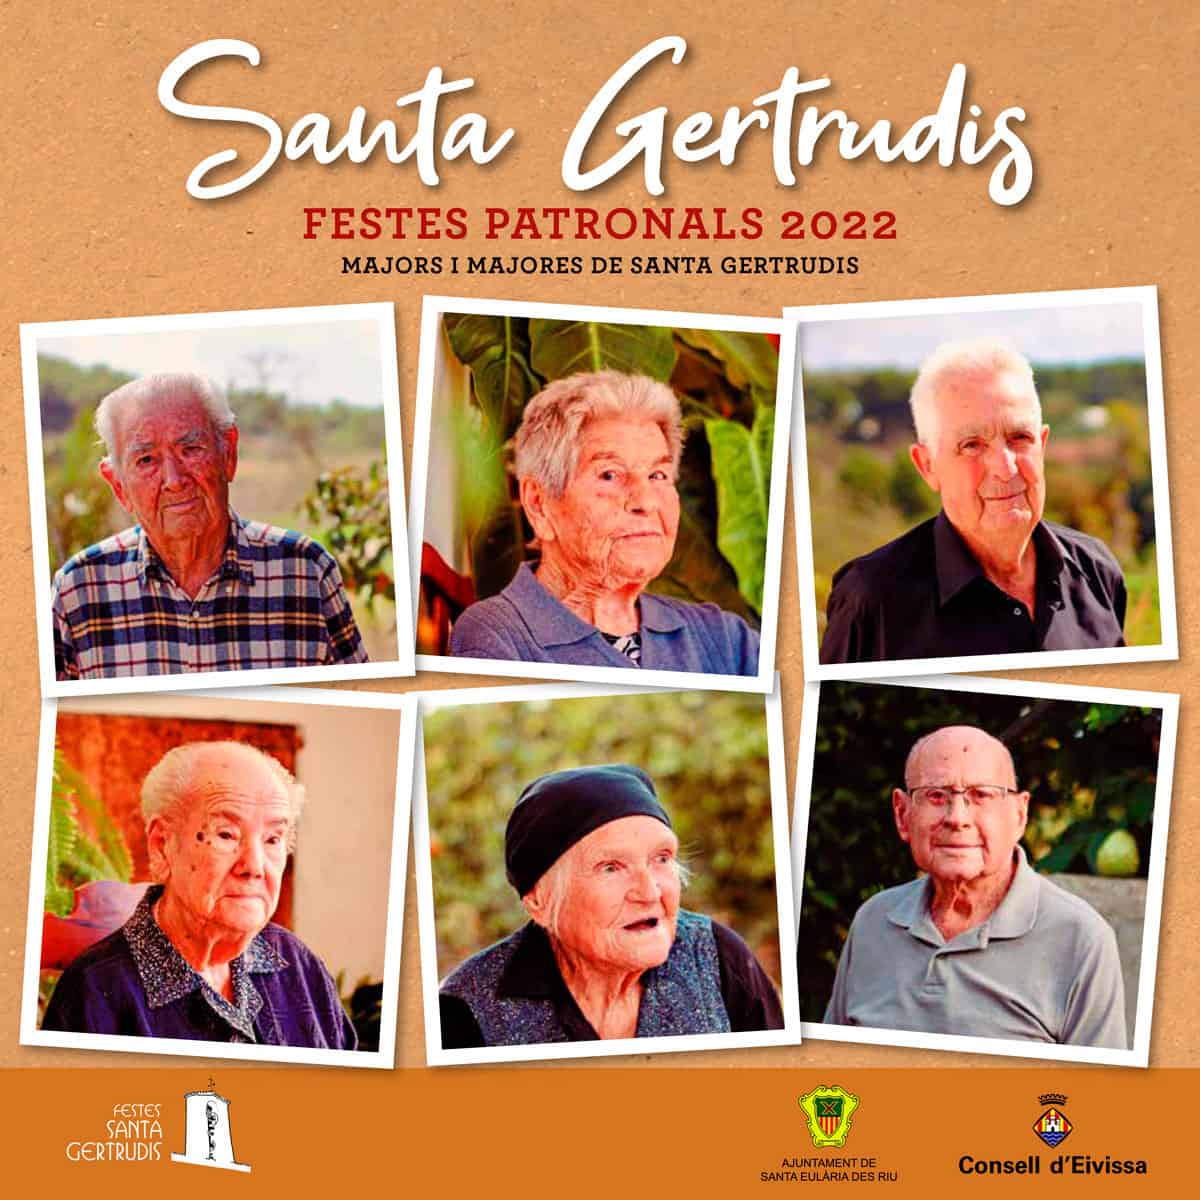 festiviteiten-van-santa-gertrudis-2022-ibiza-welcometoibiza